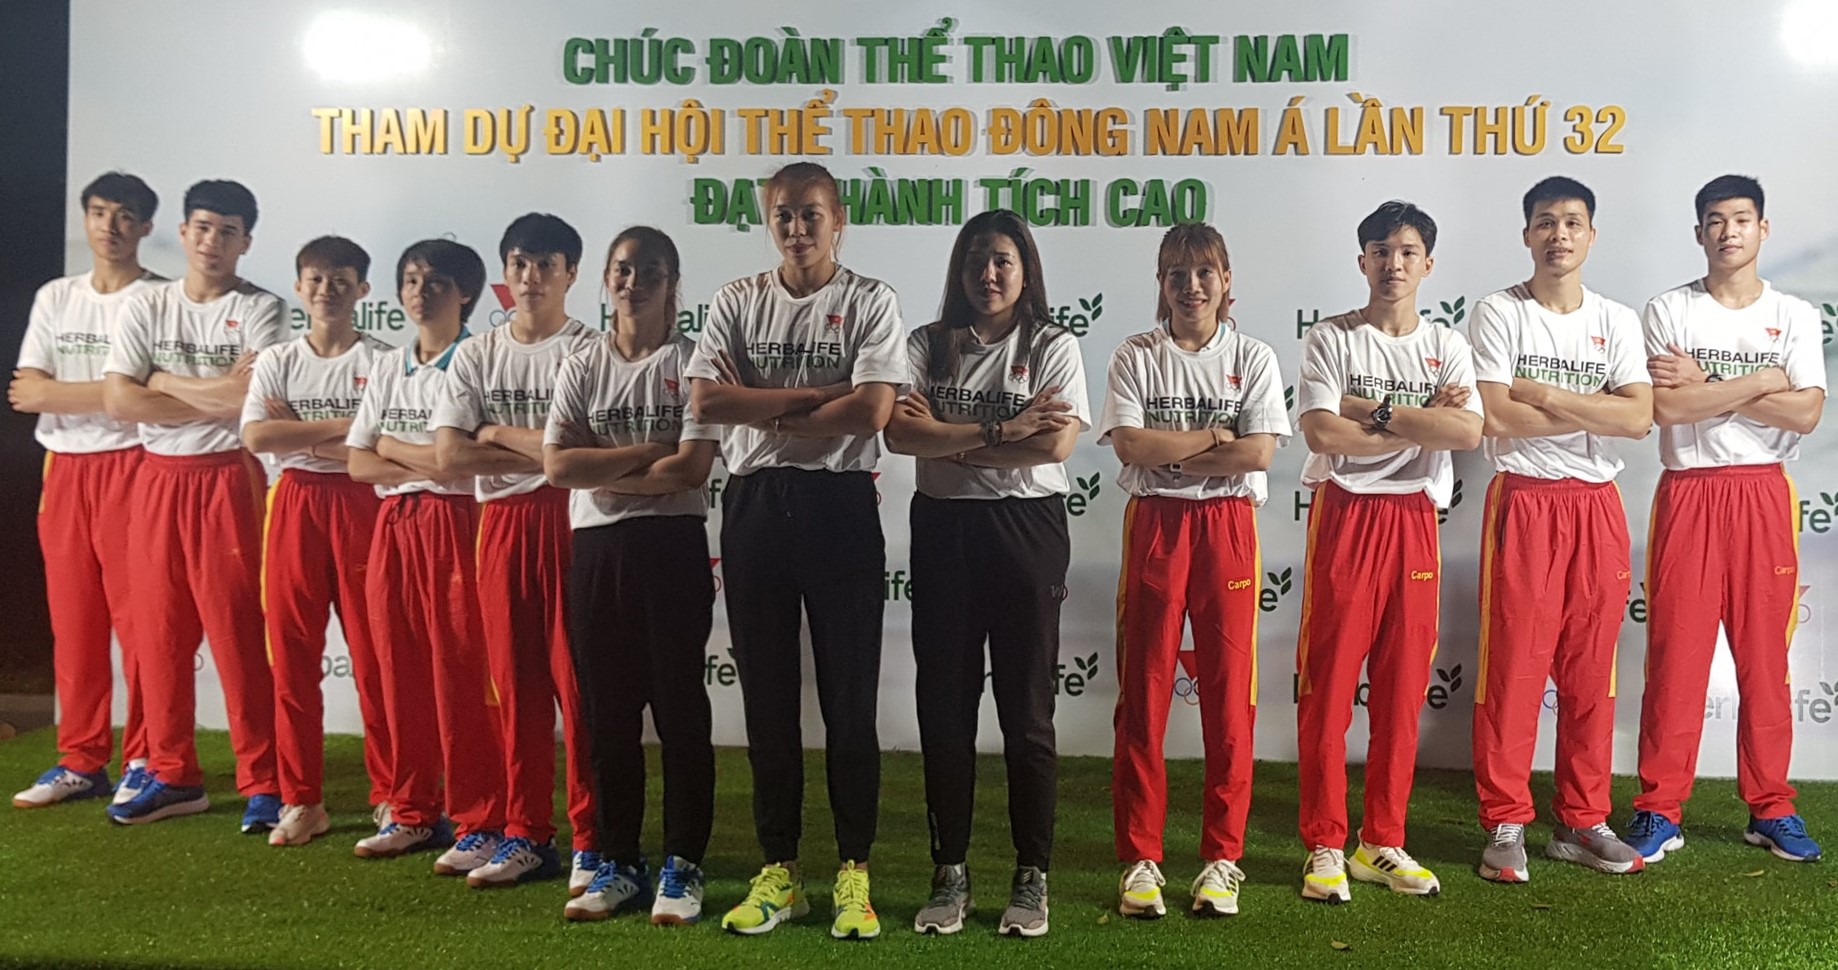 Võ sĩ Việt Nam dự Kun Bokator SEA Games 32 được treo thưởng 20 triệu đồng - Ảnh 1